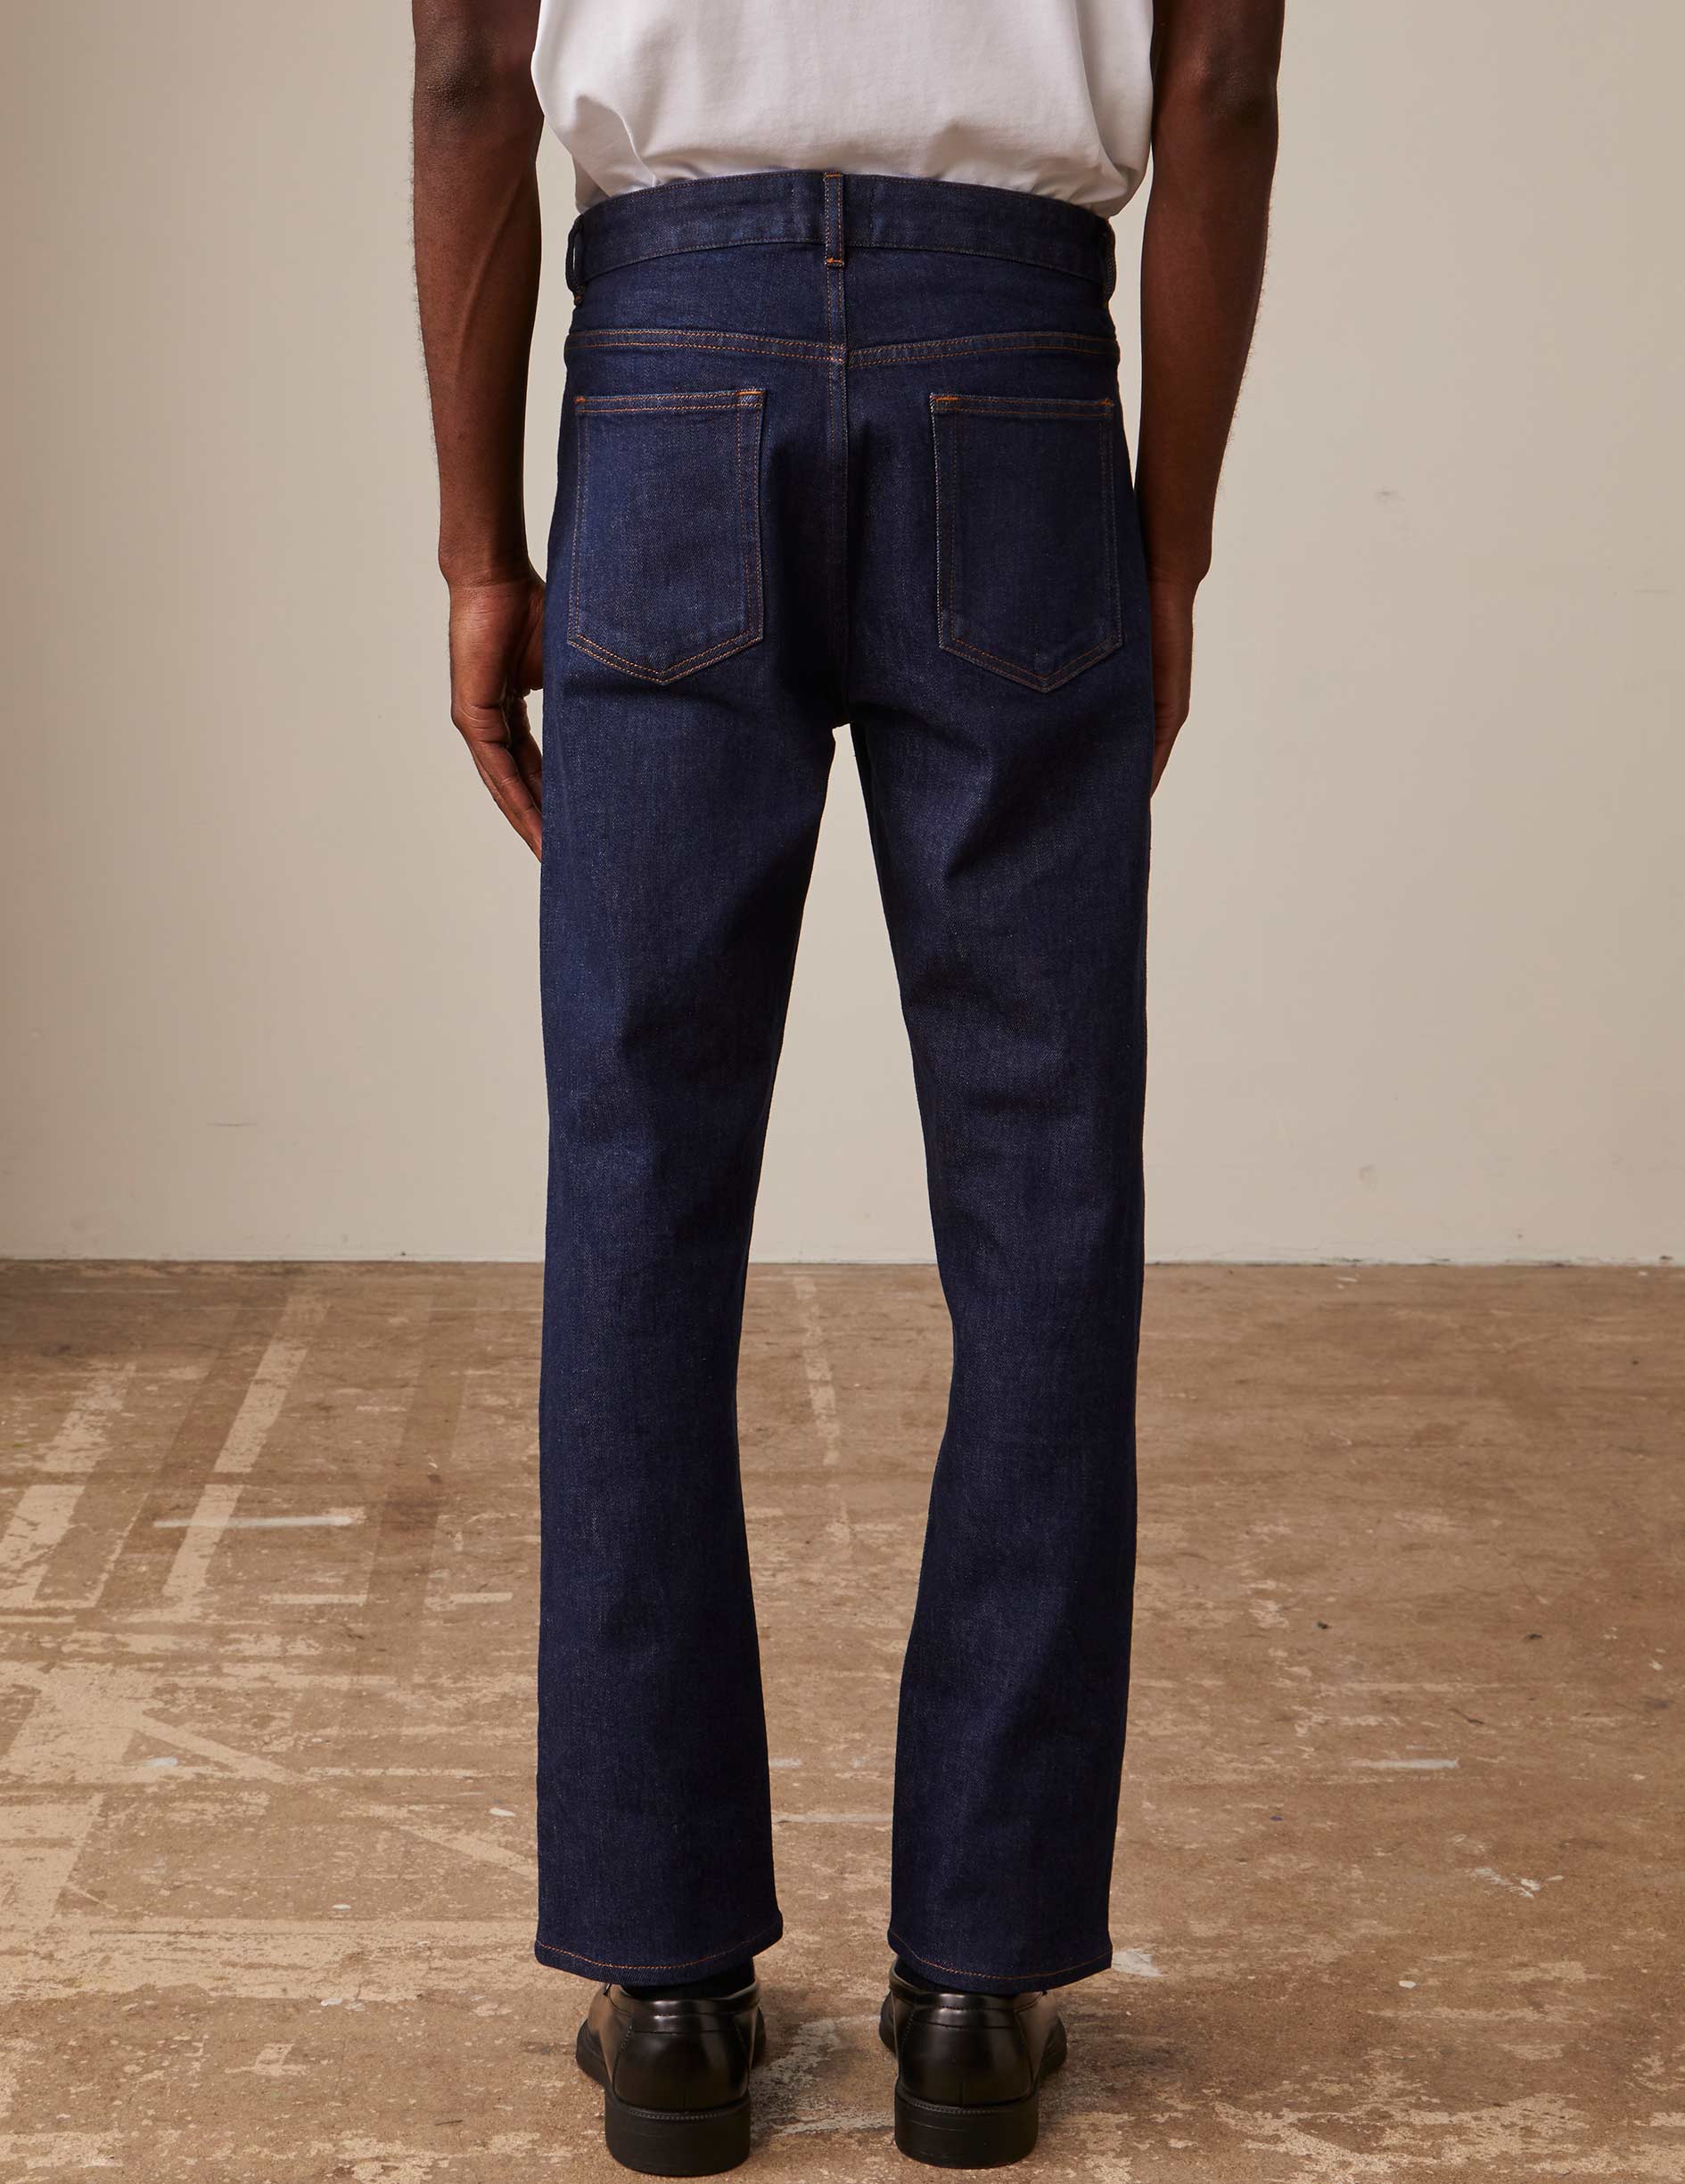 Florentine jeans in navy denim